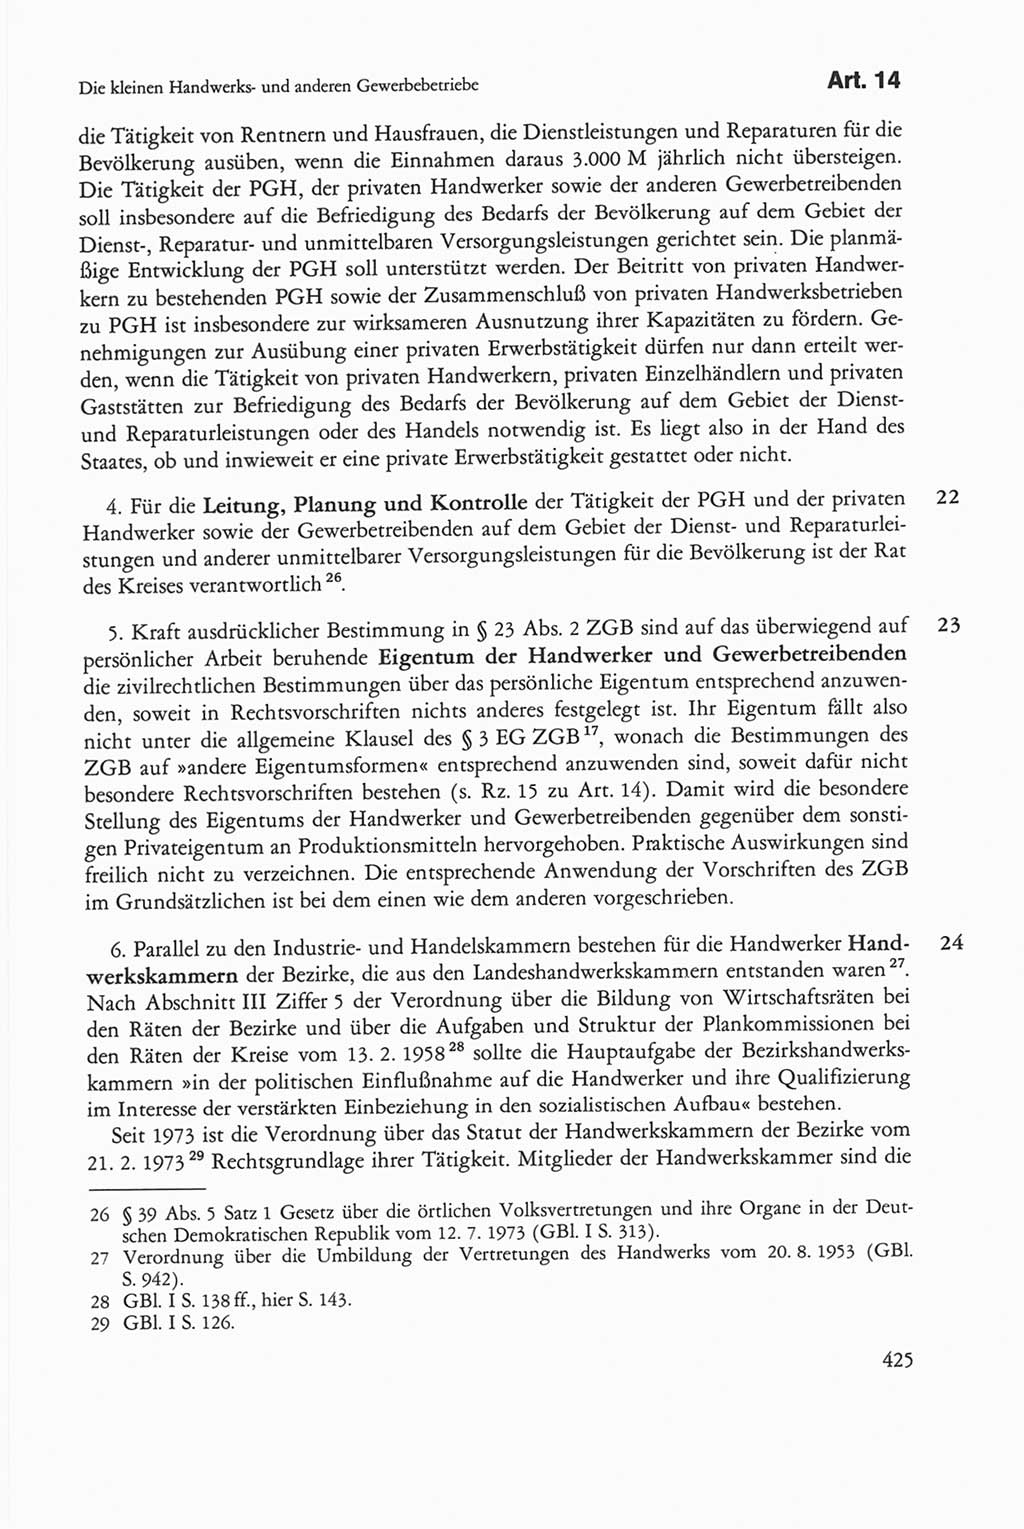 Die sozialistische Verfassung der Deutschen Demokratischen Republik (DDR), Kommentar 1982, Seite 425 (Soz. Verf. DDR Komm. 1982, S. 425)